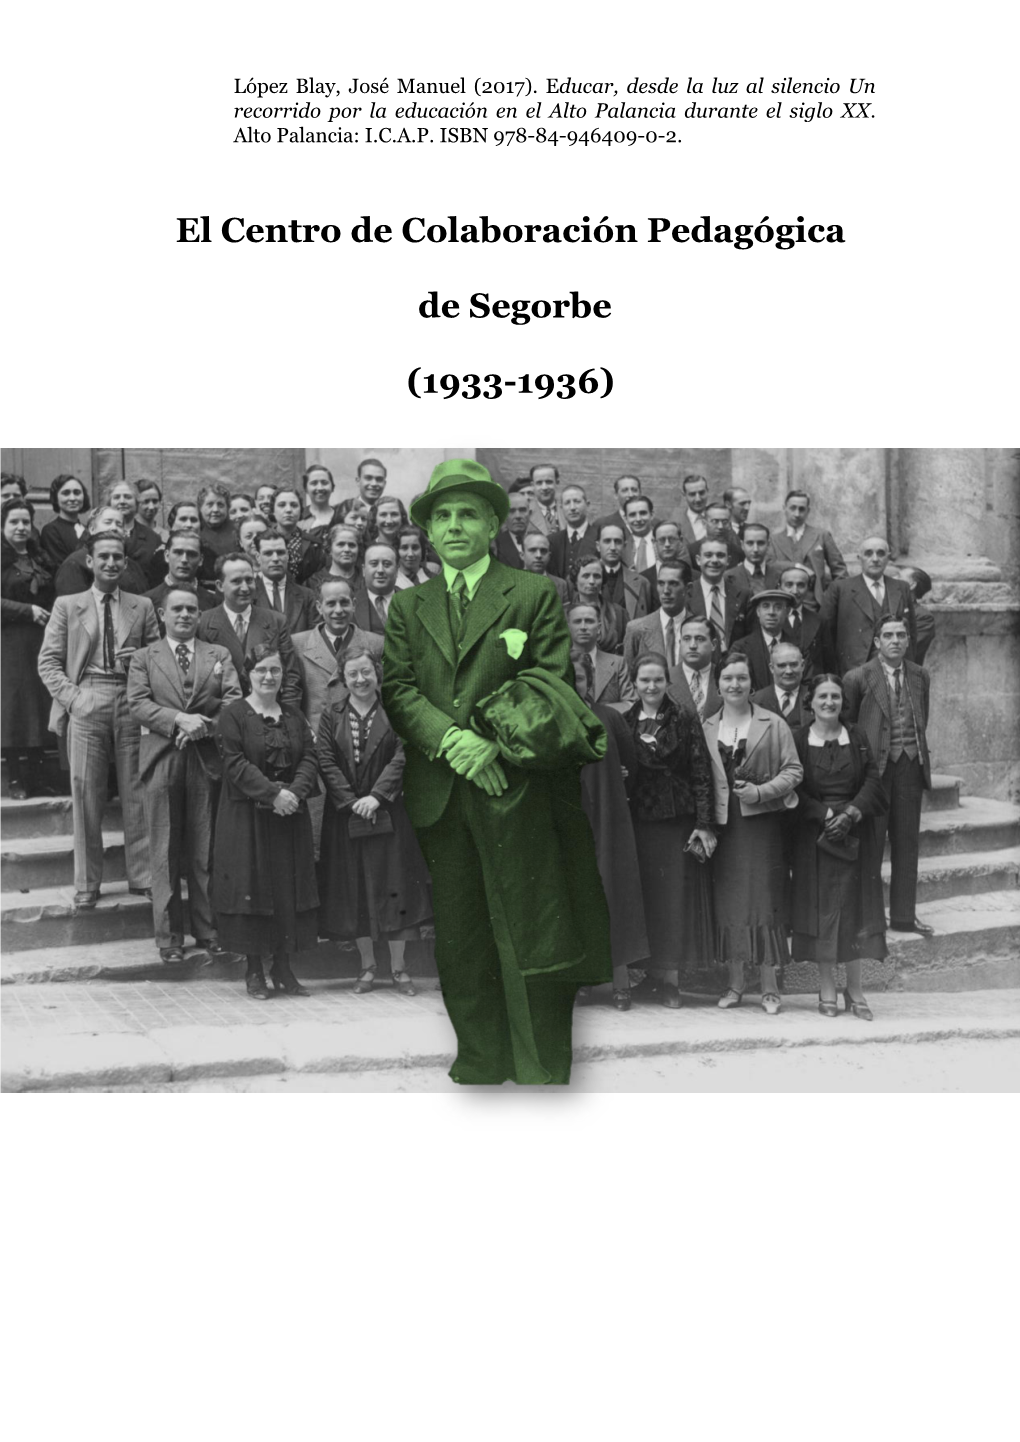 El Centro De Colaboración Pedagógica De Segorbe (Castellón) Que Debió De Funcionar Desde La Primavera De 1934 Hasta La De 1936